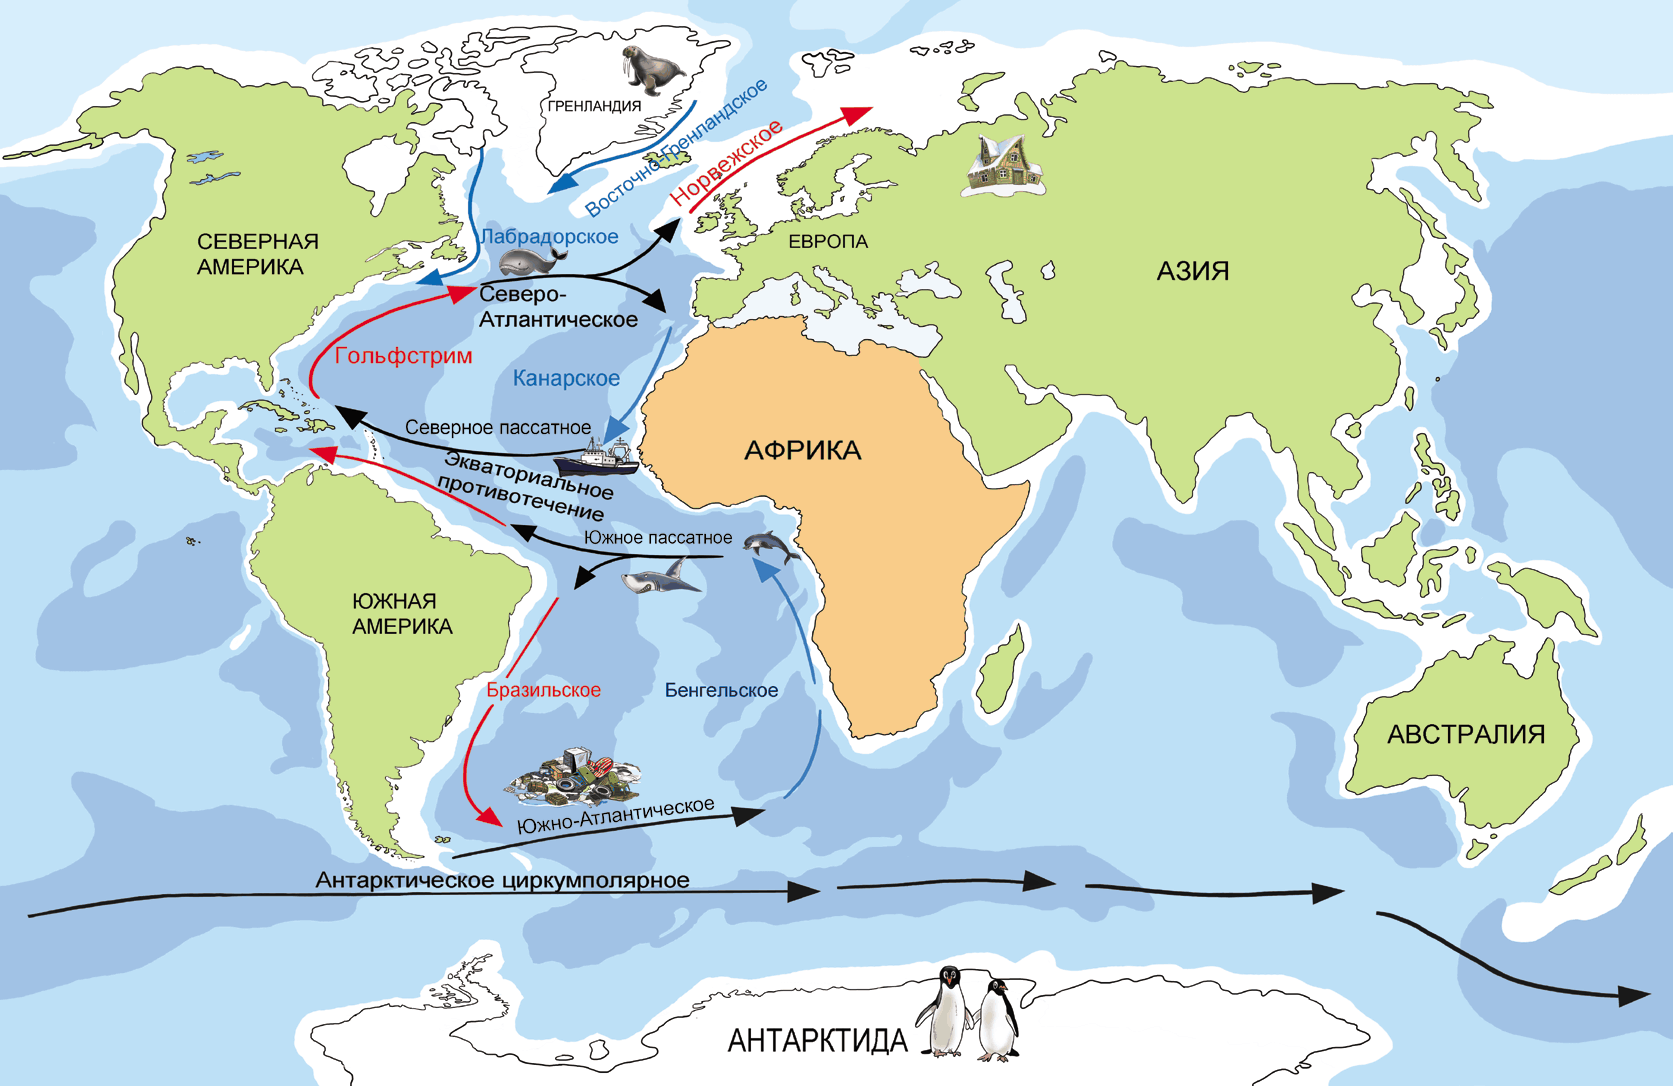 Течение вод атлантического океана. Гольфстрим на карте Атлантического океана. Северо-атлантическое течение на карте. Гольфстрим в Атлантическом океане. Карта течений Атлантического океана.